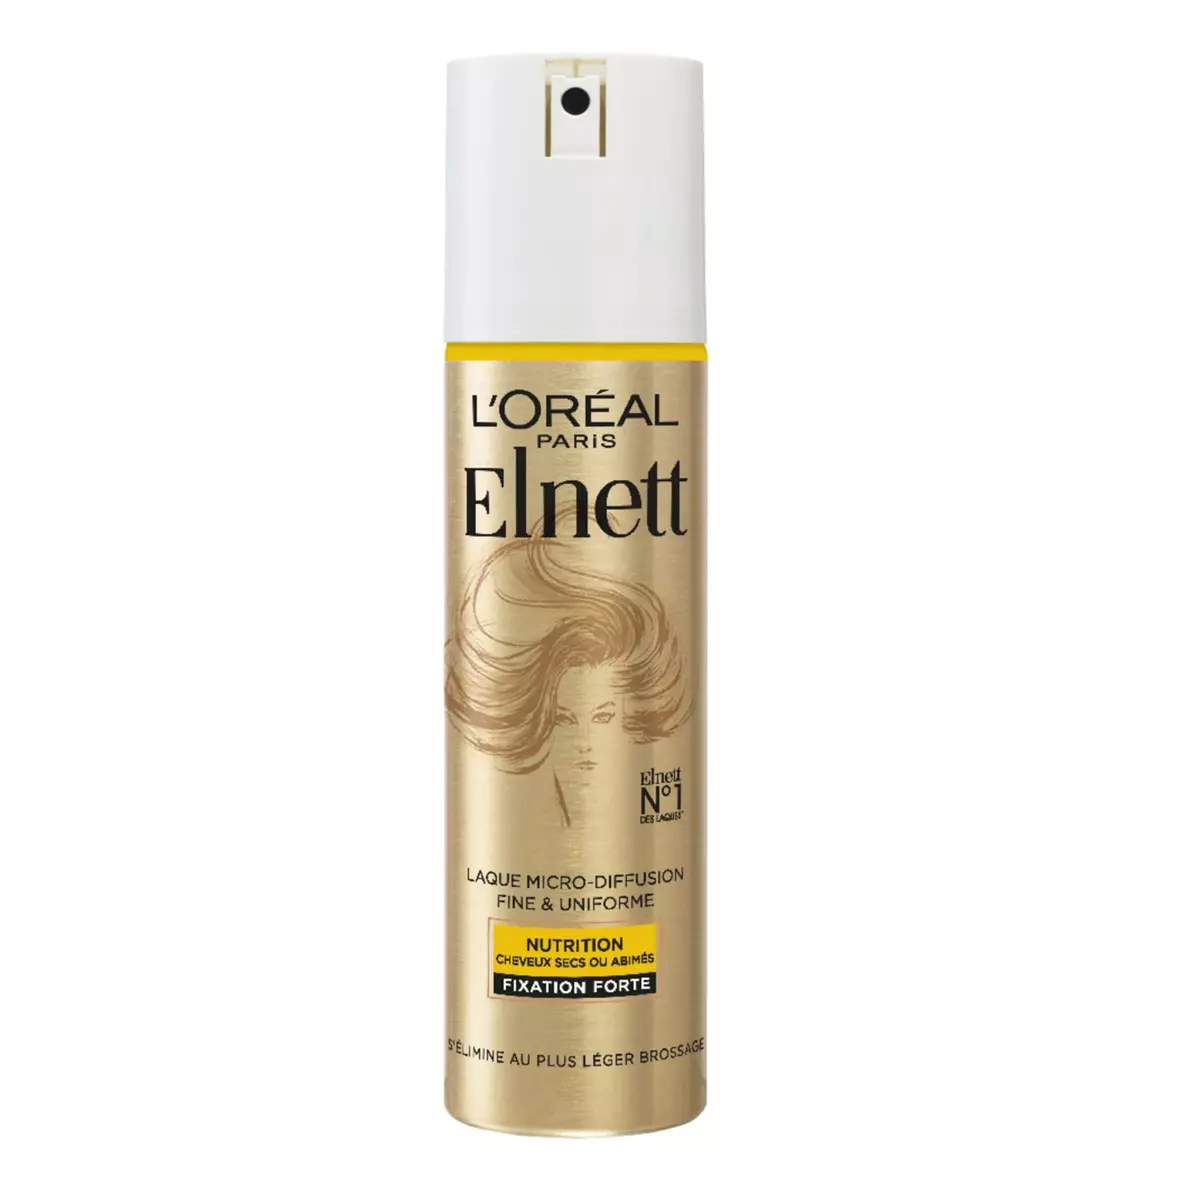 L'OREAL Elnett Laque micro-diffusion fine & uniforme pour cheveux secs ou abimés fixation forte 150ml